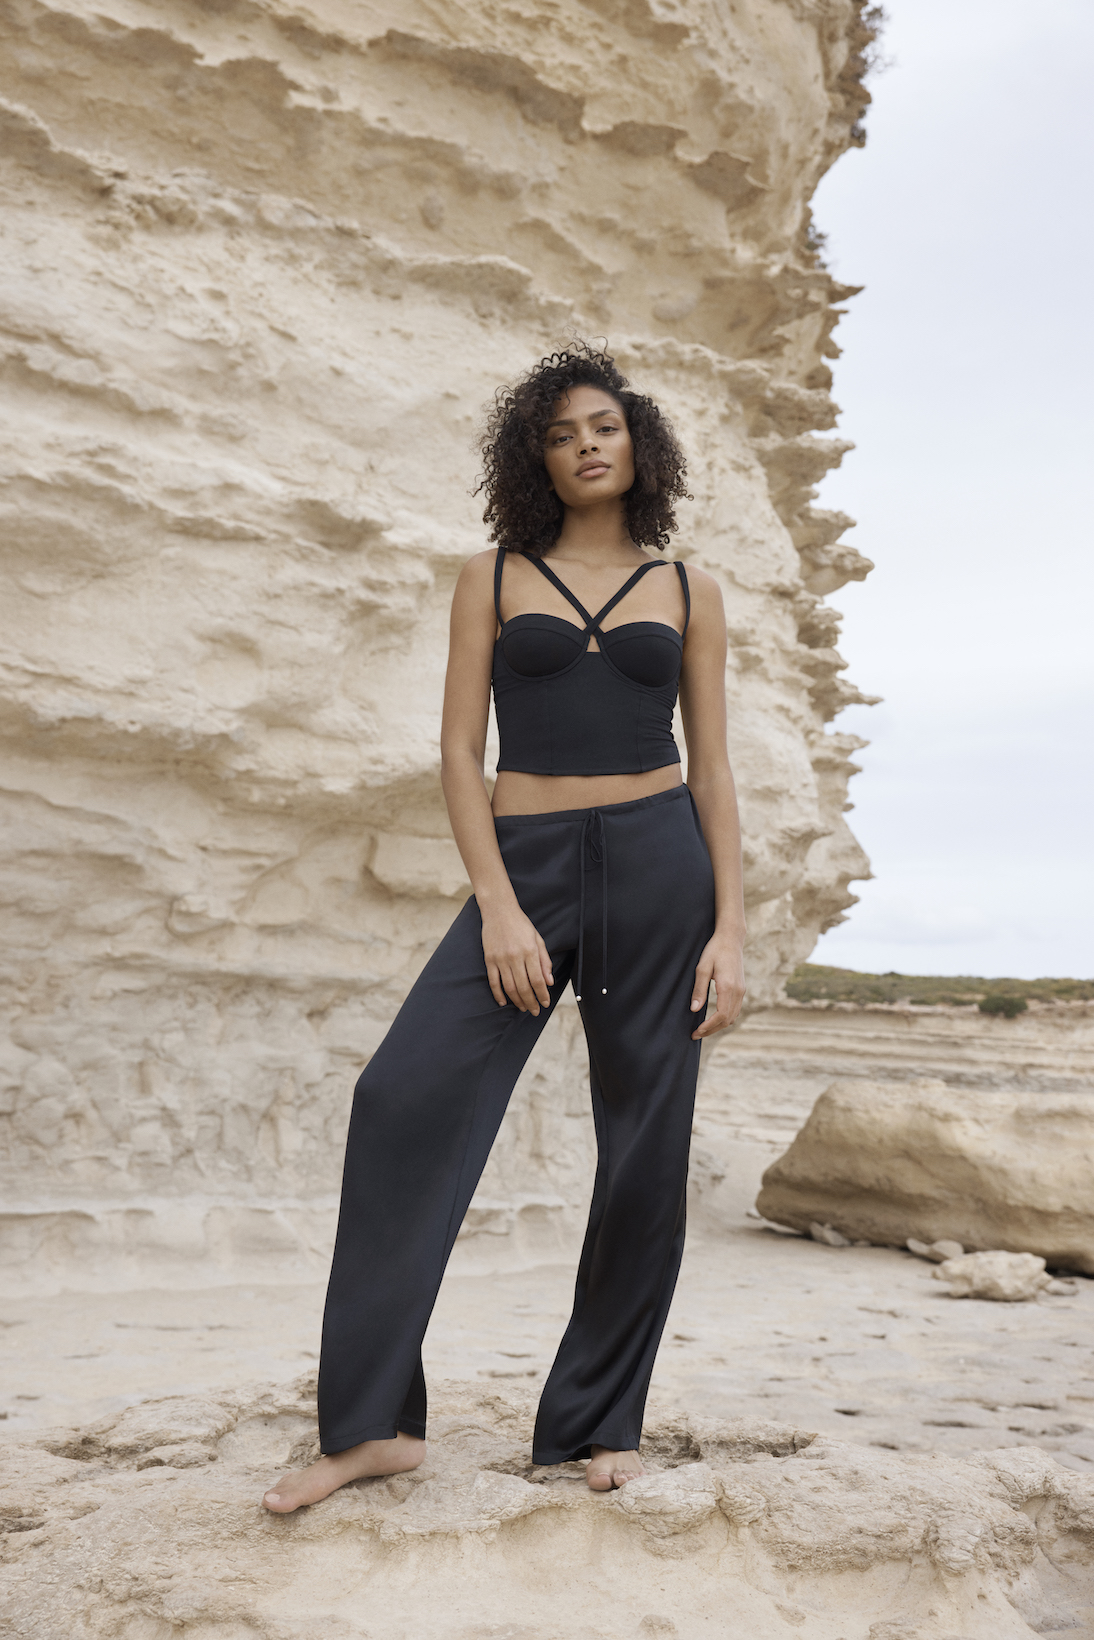 La Perla Woman's Classic Black Body | High Quality La Perla Lace Body |  Intricate La Perla Black Lace Body